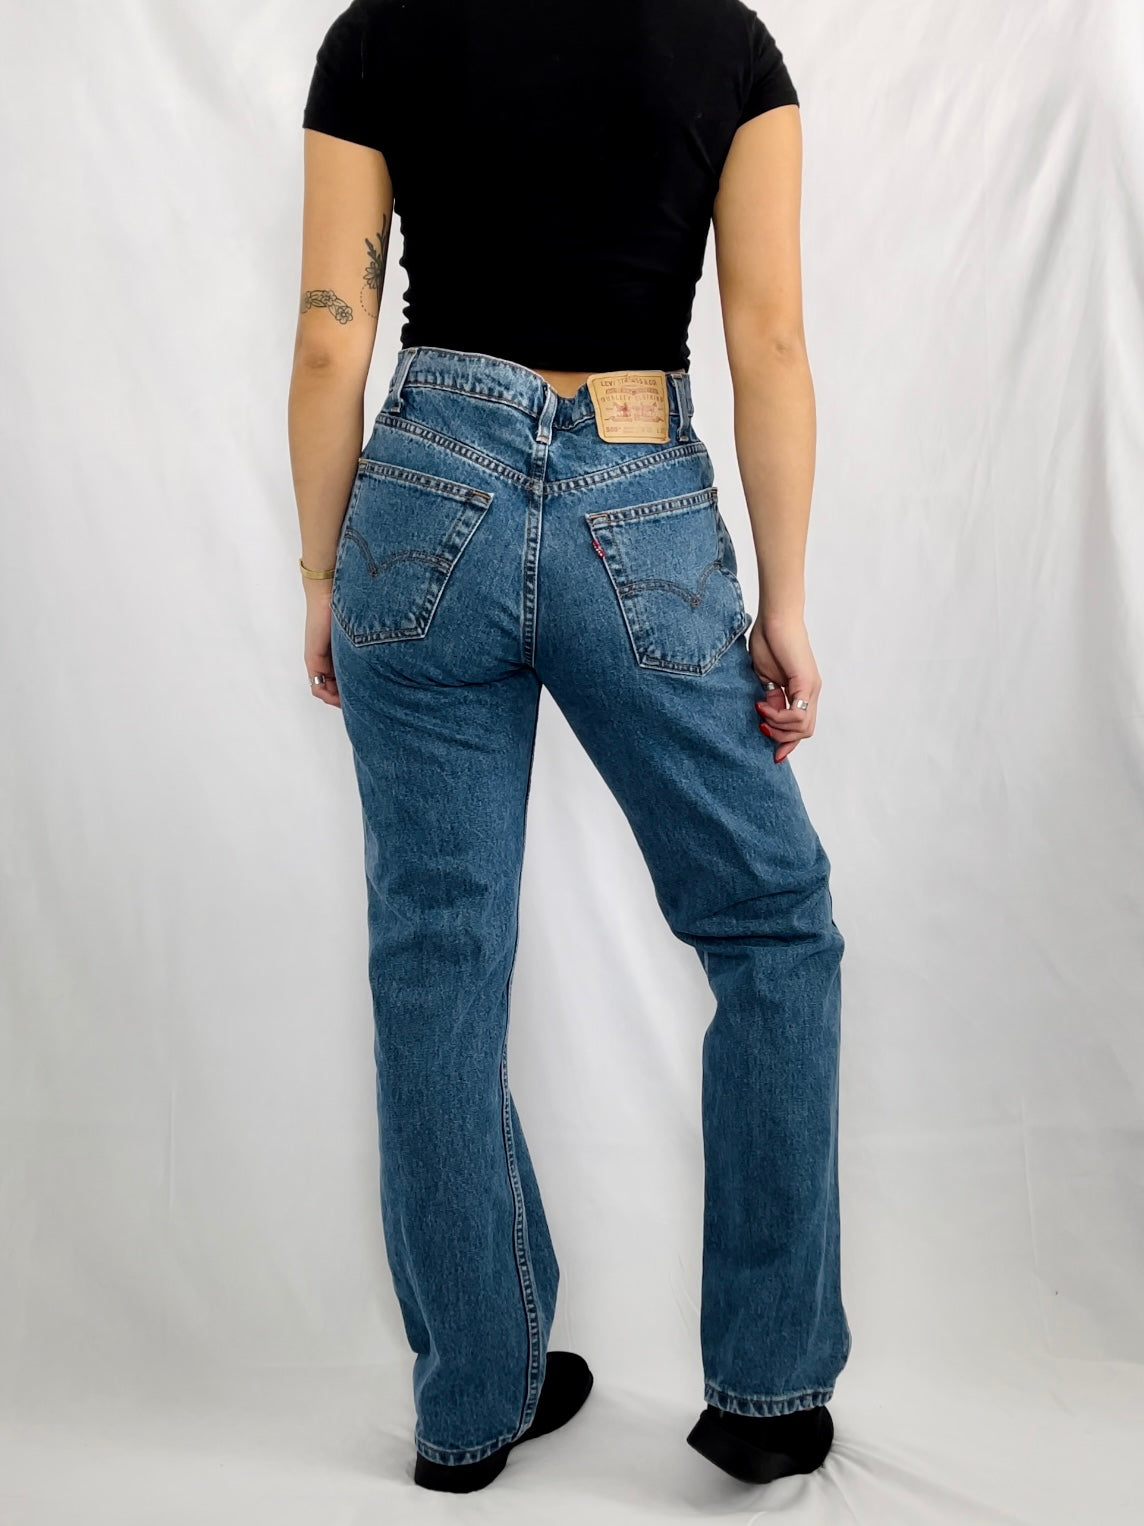 MENS 90s Levi's 505 Jeans (31x31